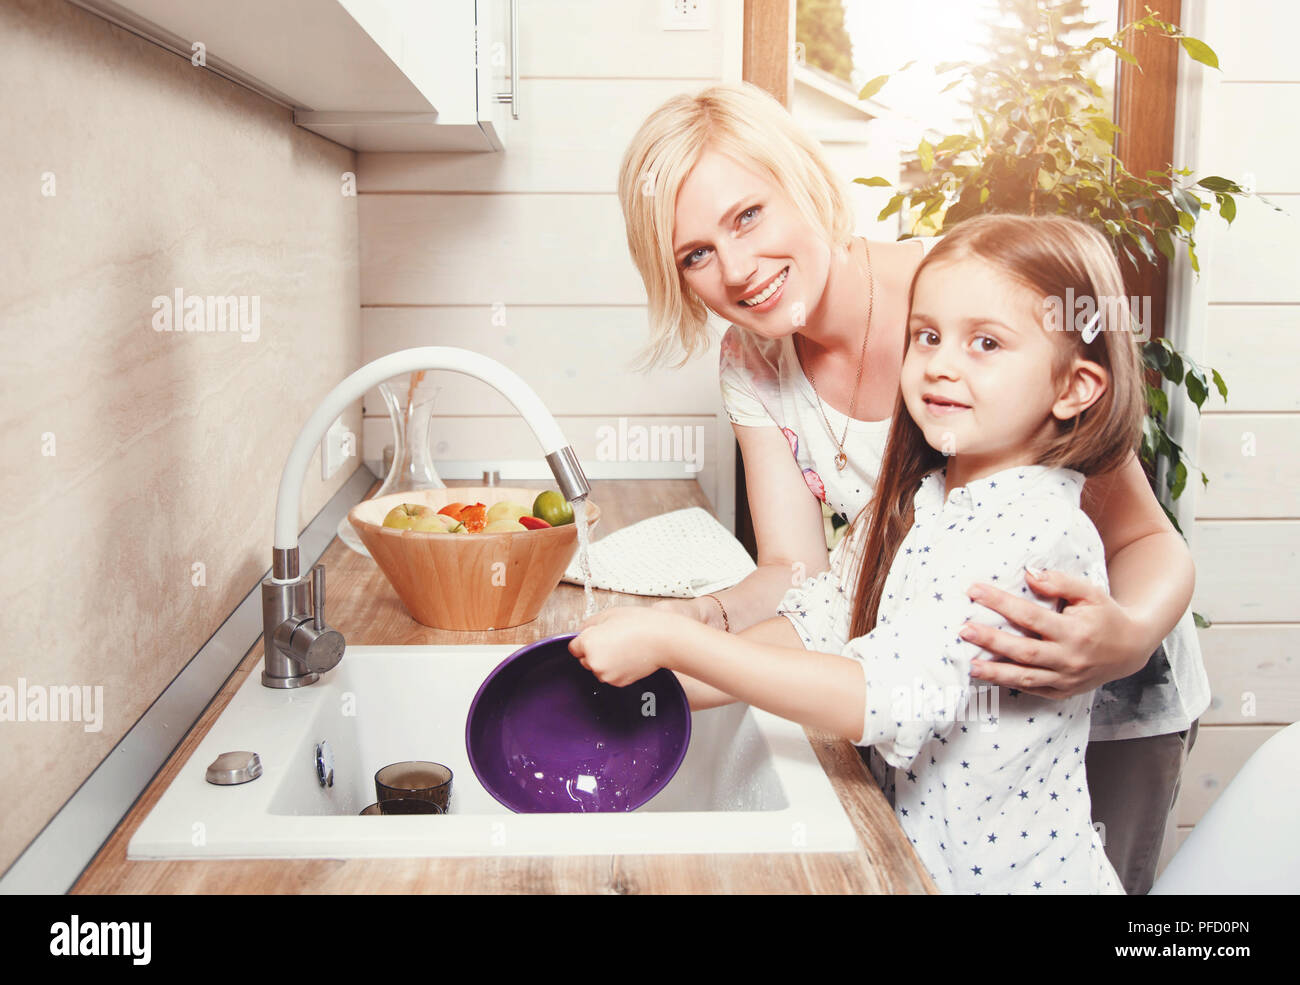 Дочка моет посуду. Мама с дочкой моют посуду. Женщина и дочка моют посуду. Картинка мама и дочка моют посуду. Мама просит дочек помыть посуду.